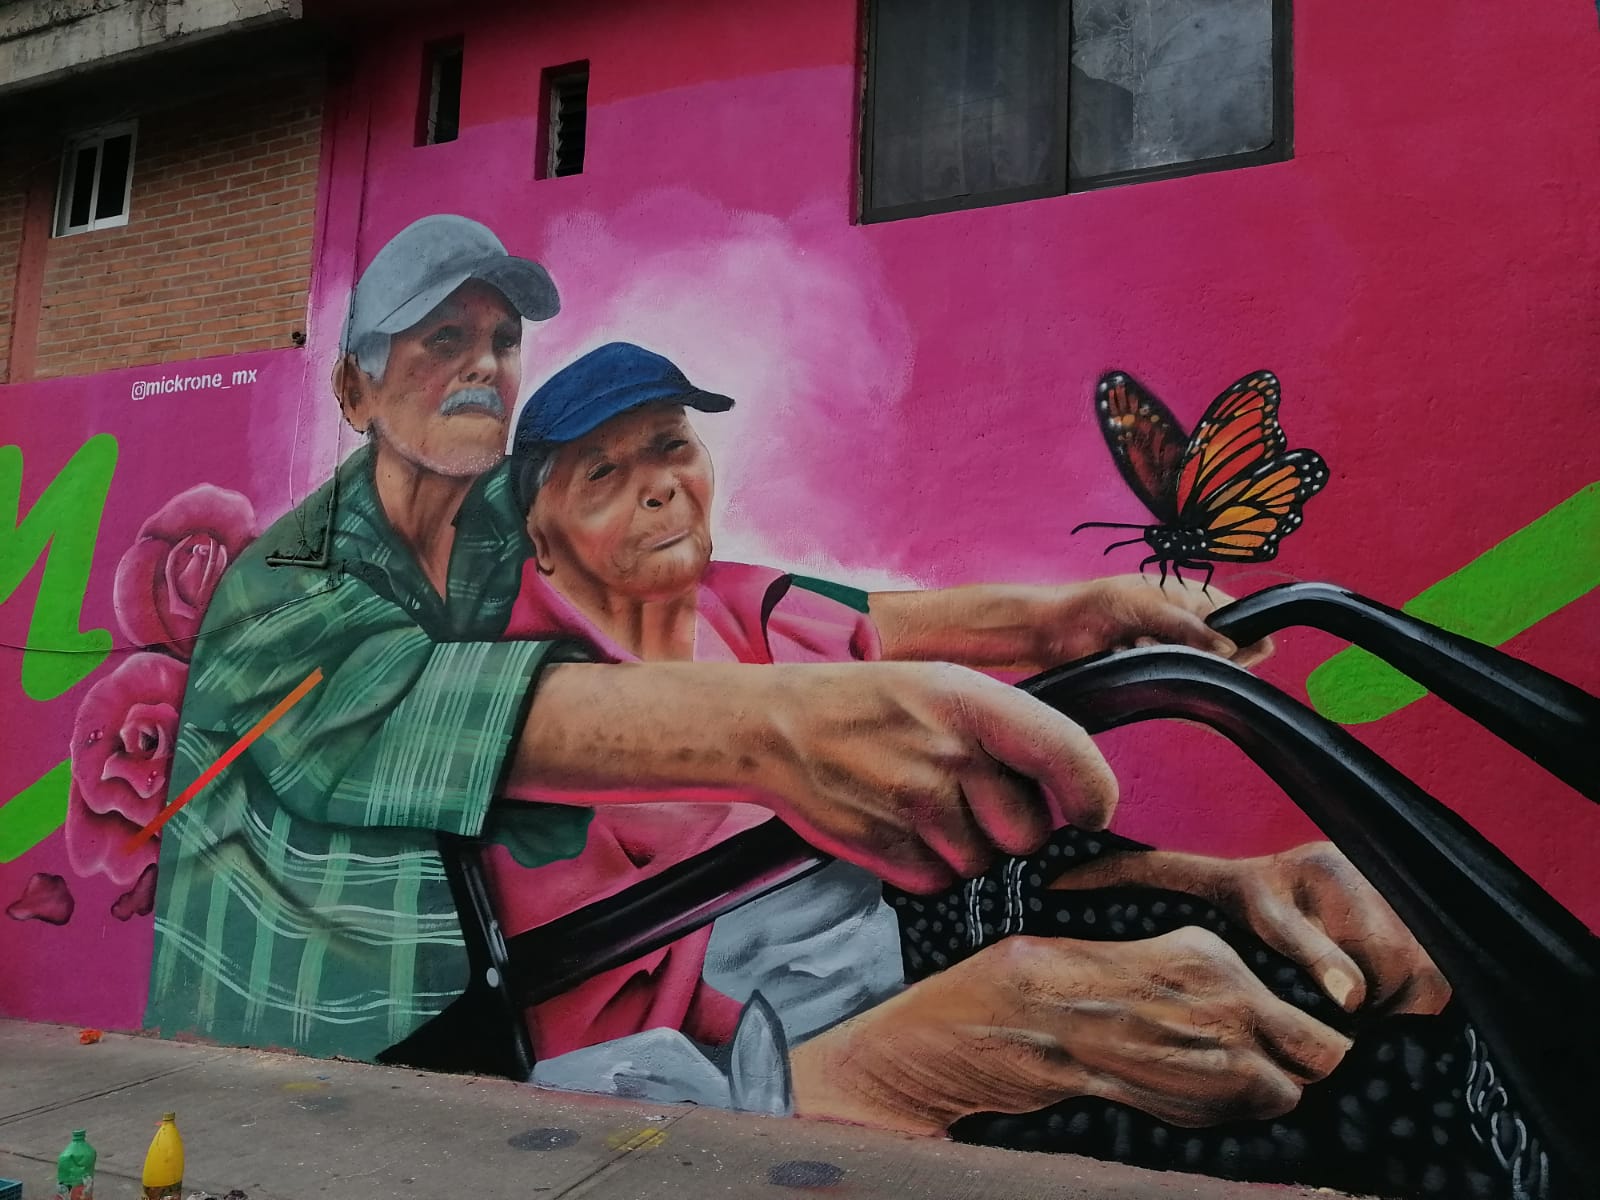 Historias de habitantes de Iztapalapa inspiran a artista urbano y las plasma en murales